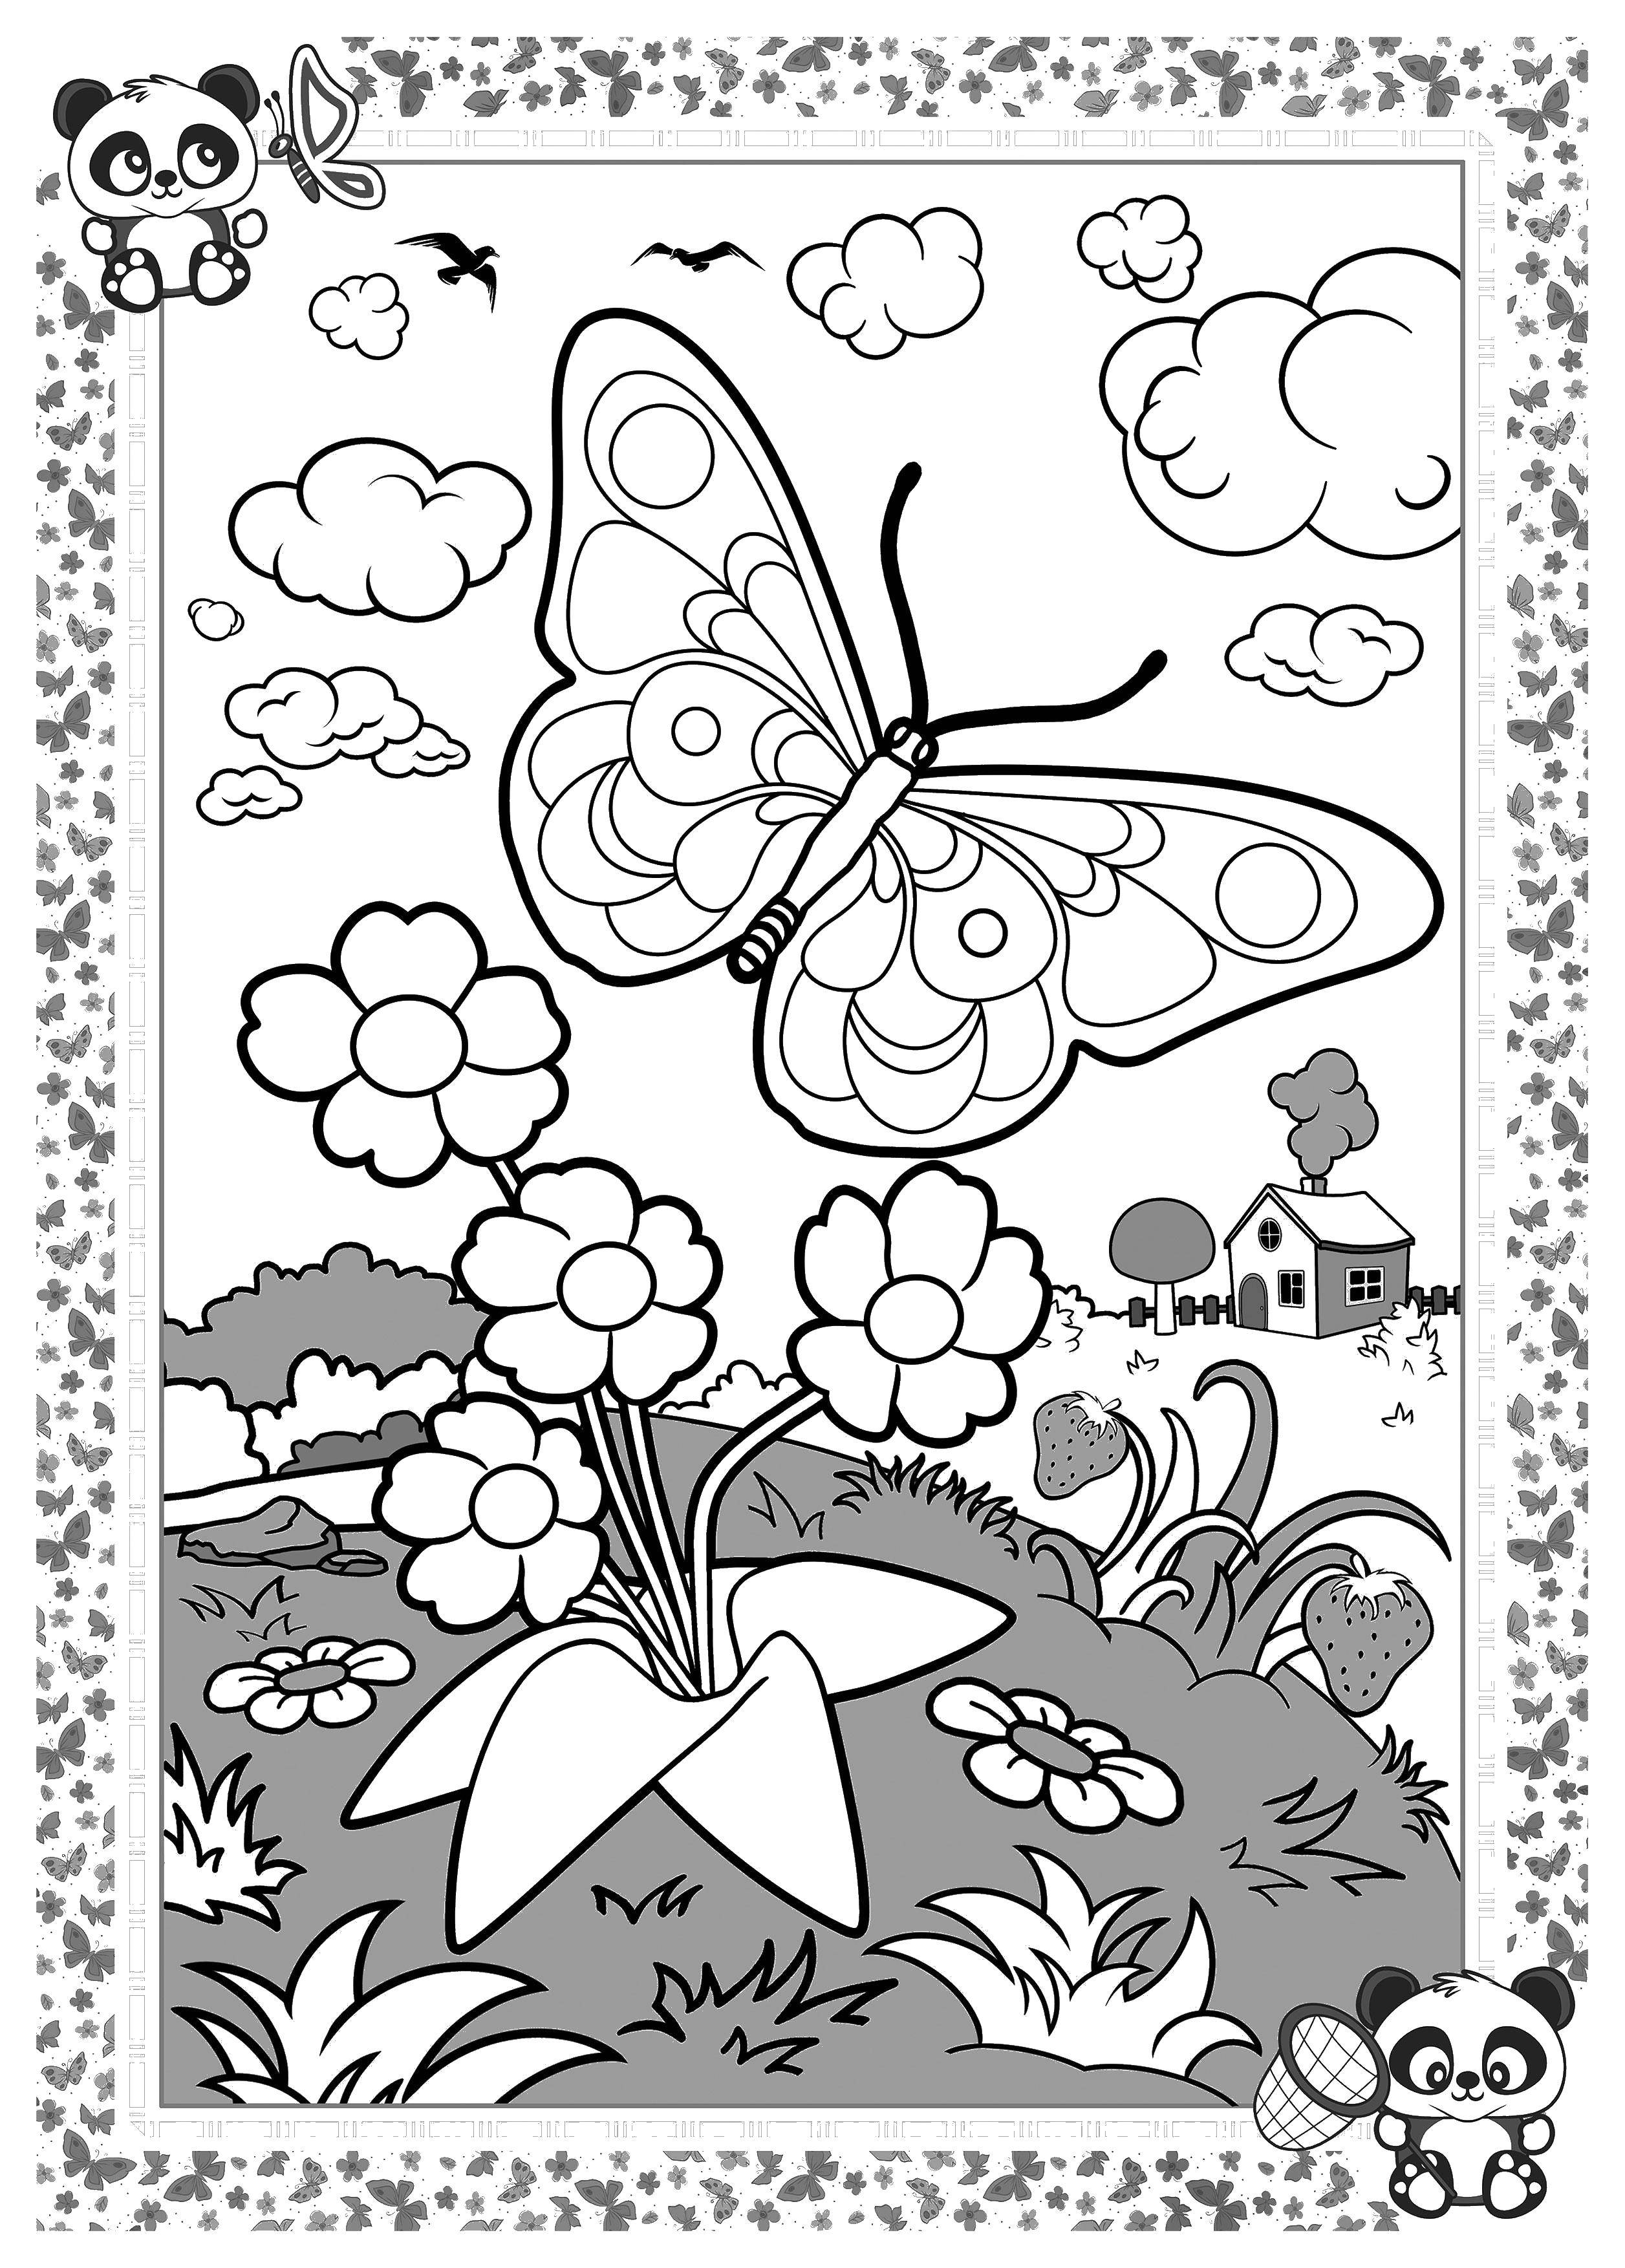 Опис: розмальовки  Метелик біля квітів. Категорія: зошит. Теги:  метелик, квіти, трава.